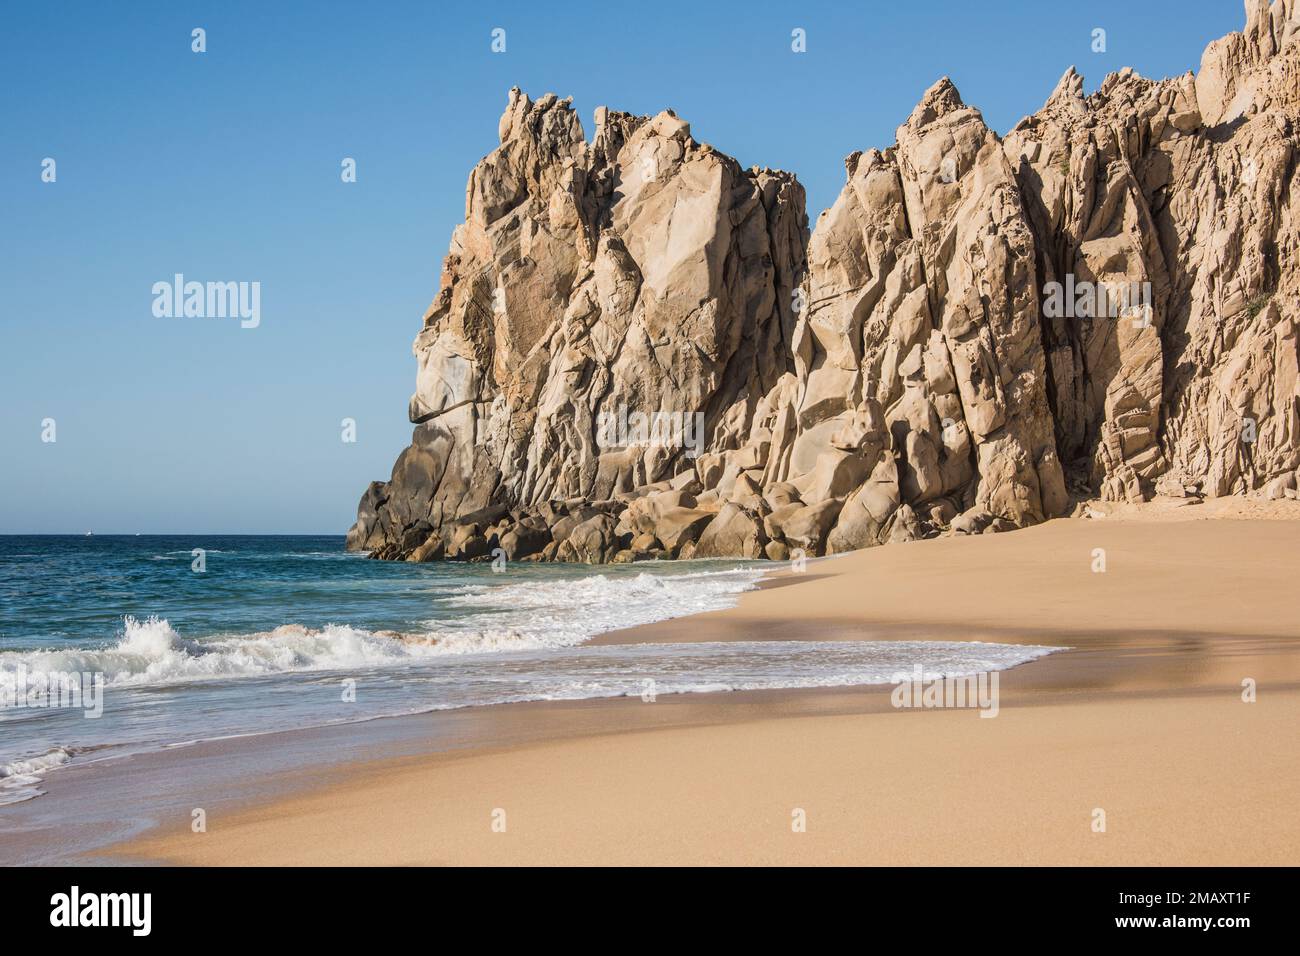 Lato Oceano Pacifico di Lover's Beach, una spiaggia con 2 oceani diversi, Pacifico e Mare di Cortez, Land's End, Cabo, Riviera messicana, Messico Foto Stock